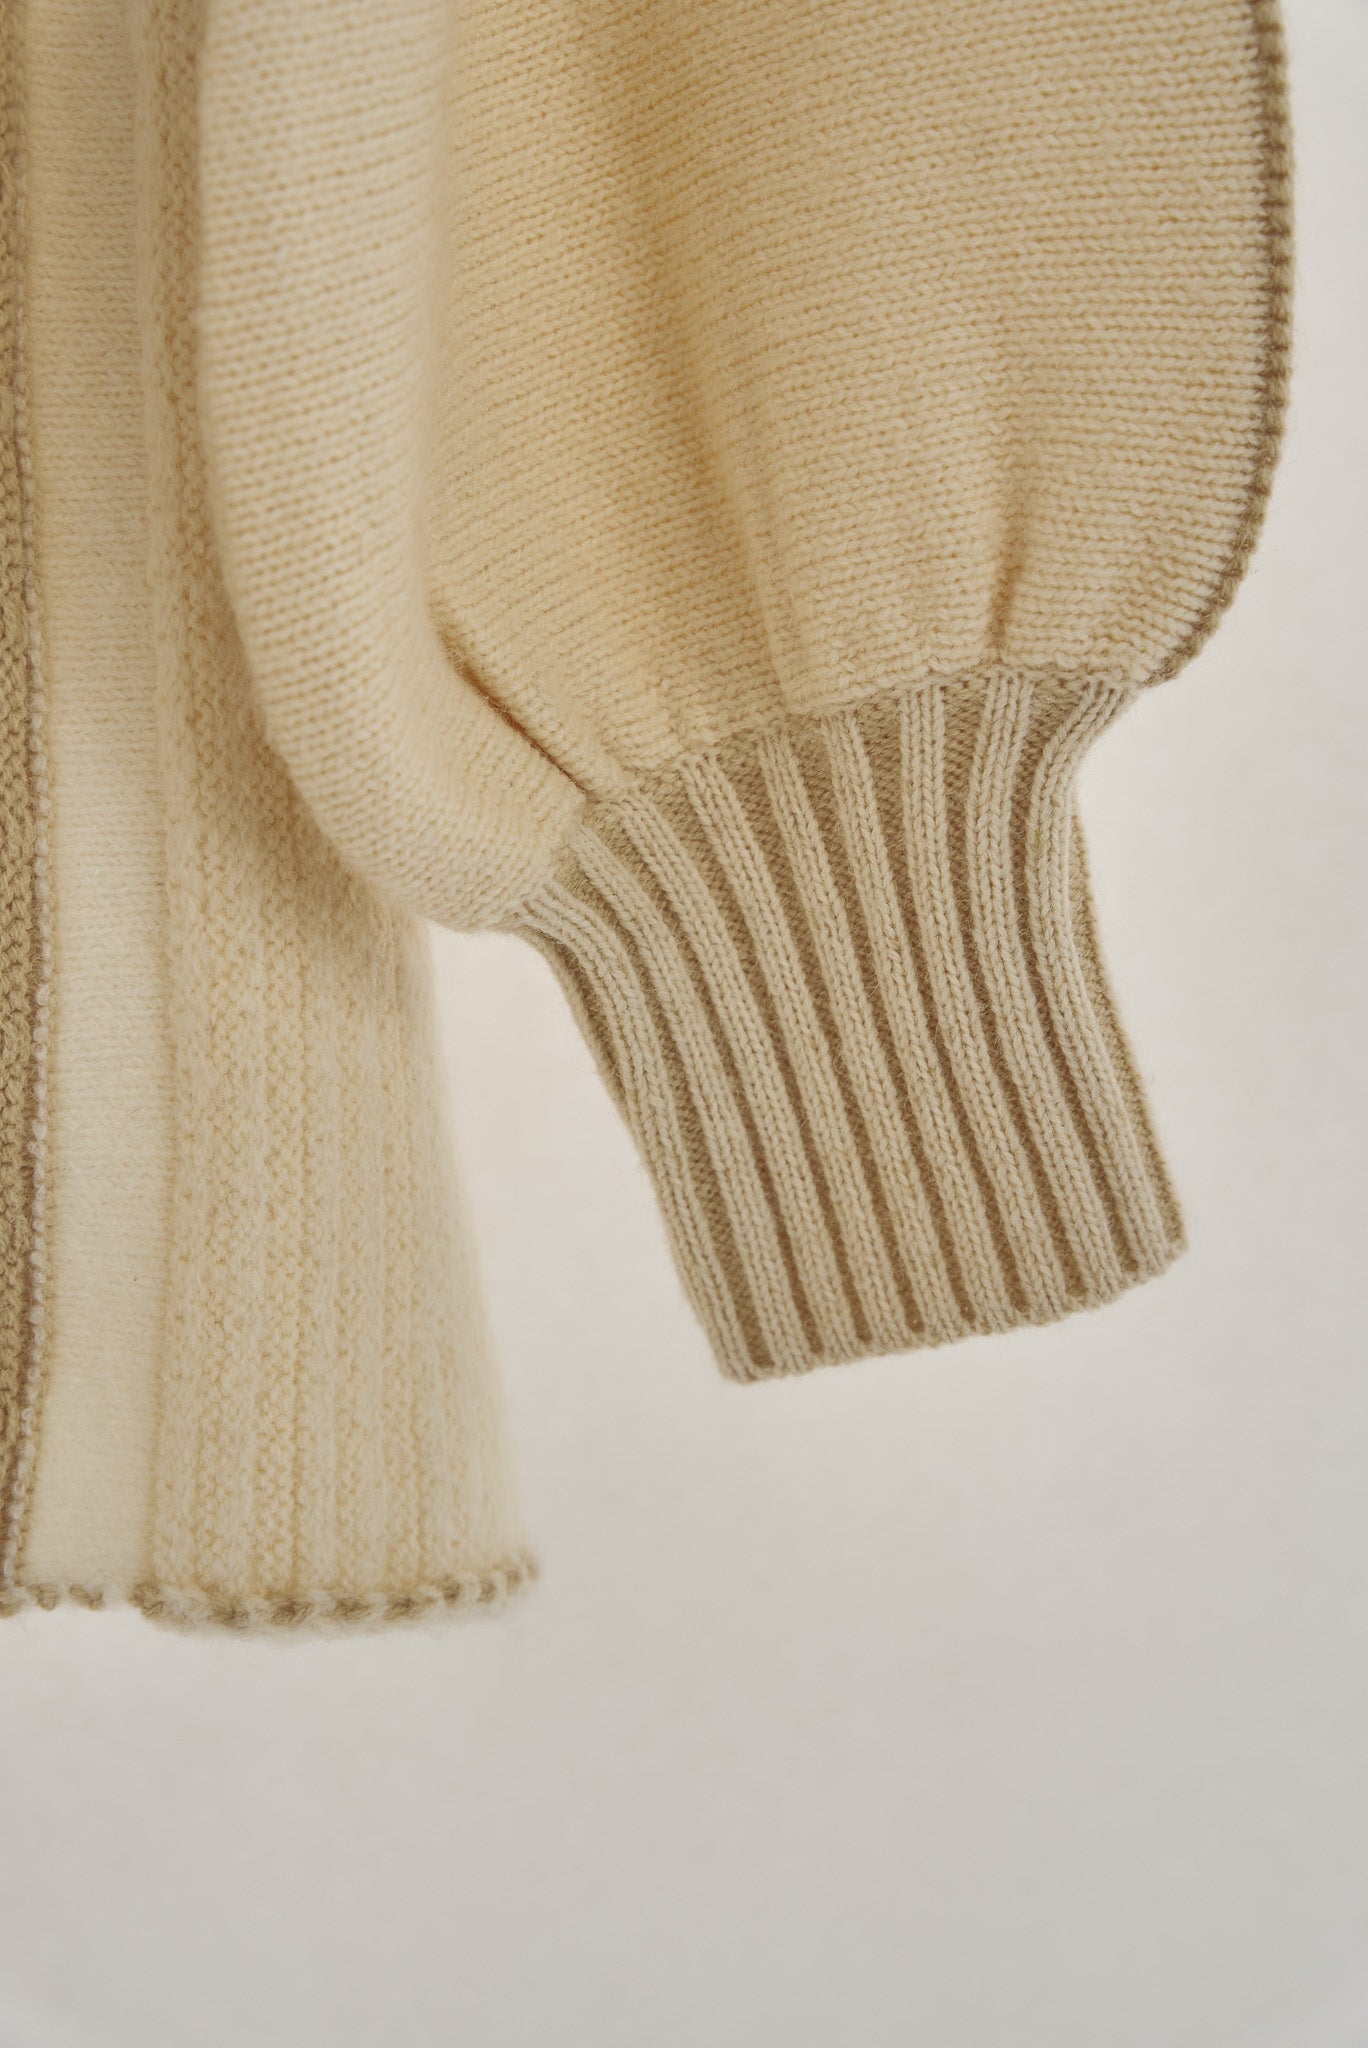 strata design knit